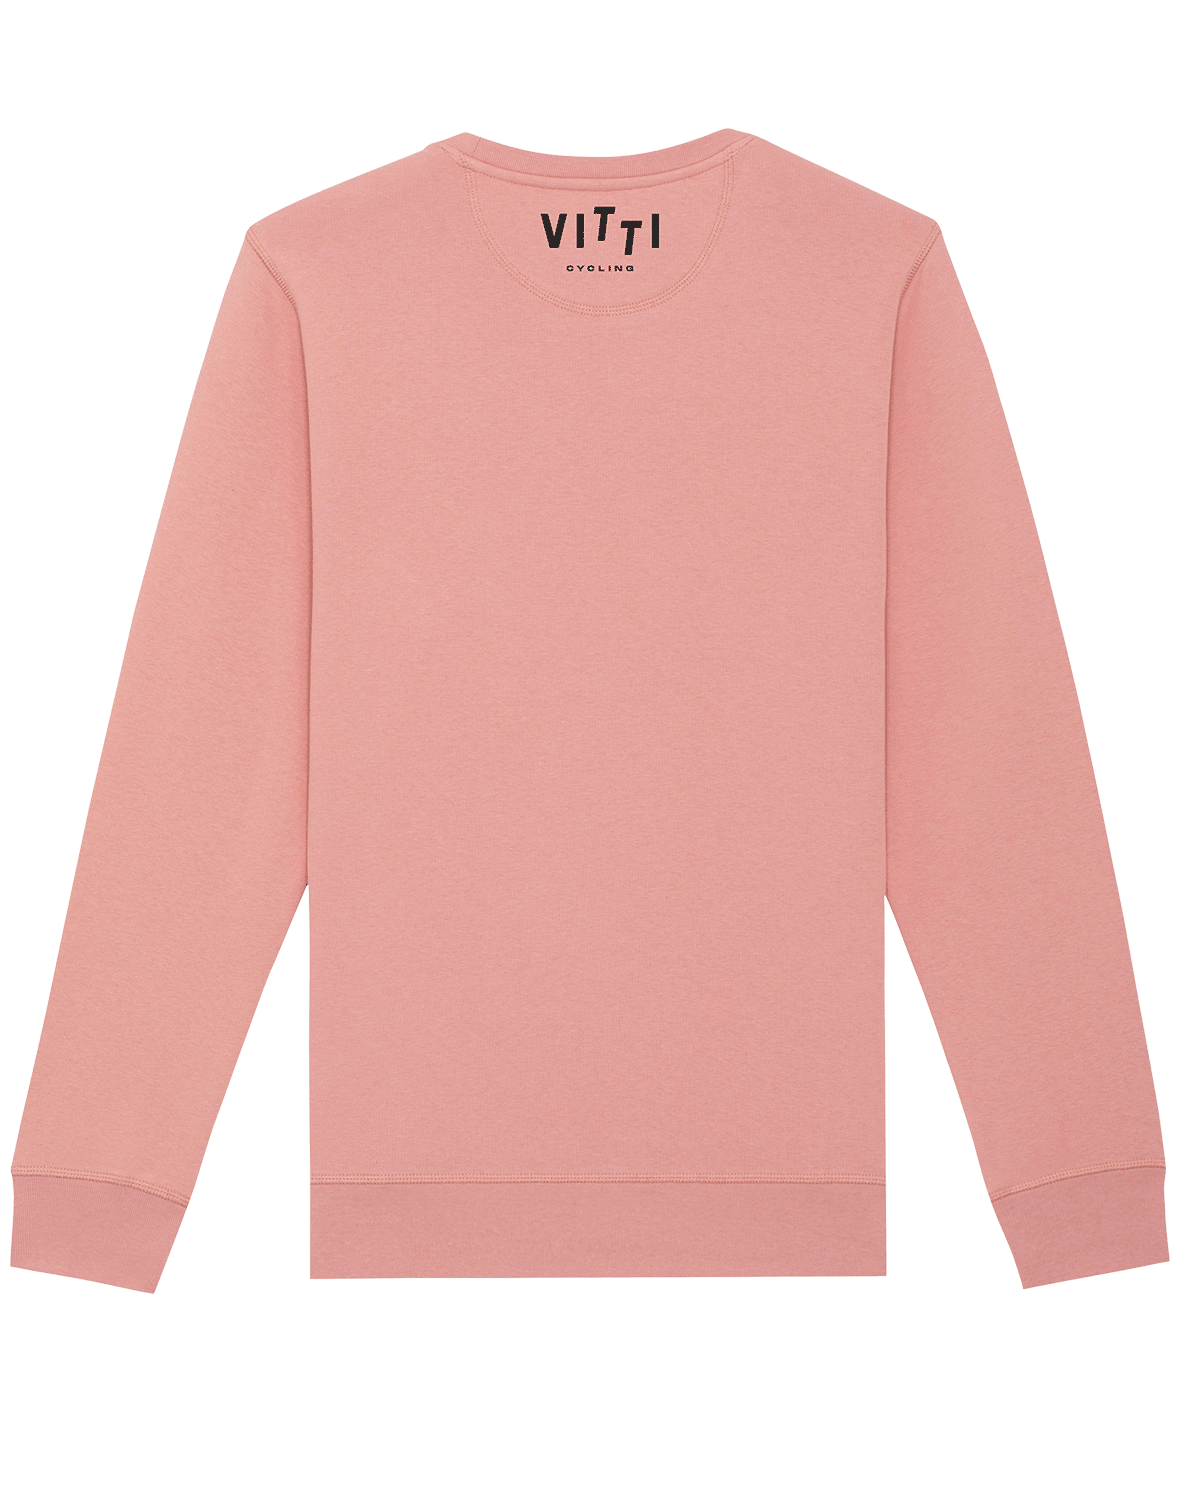 ENZO Pink Sweatshirt